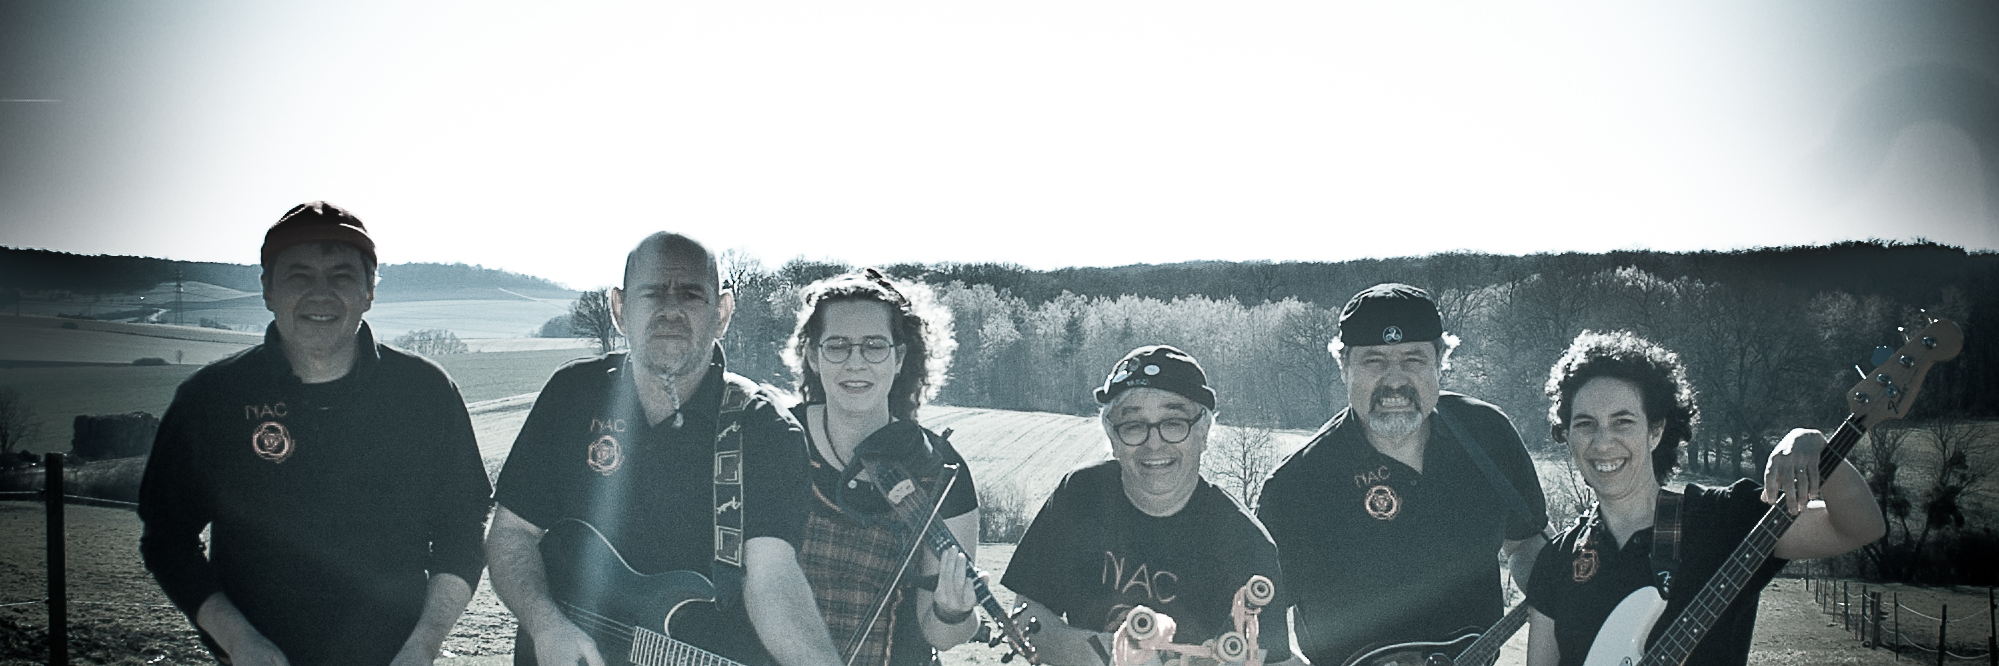 NAC, groupe de musique Musique Celtique en représentation à Meurthe et Moselle - photo de couverture